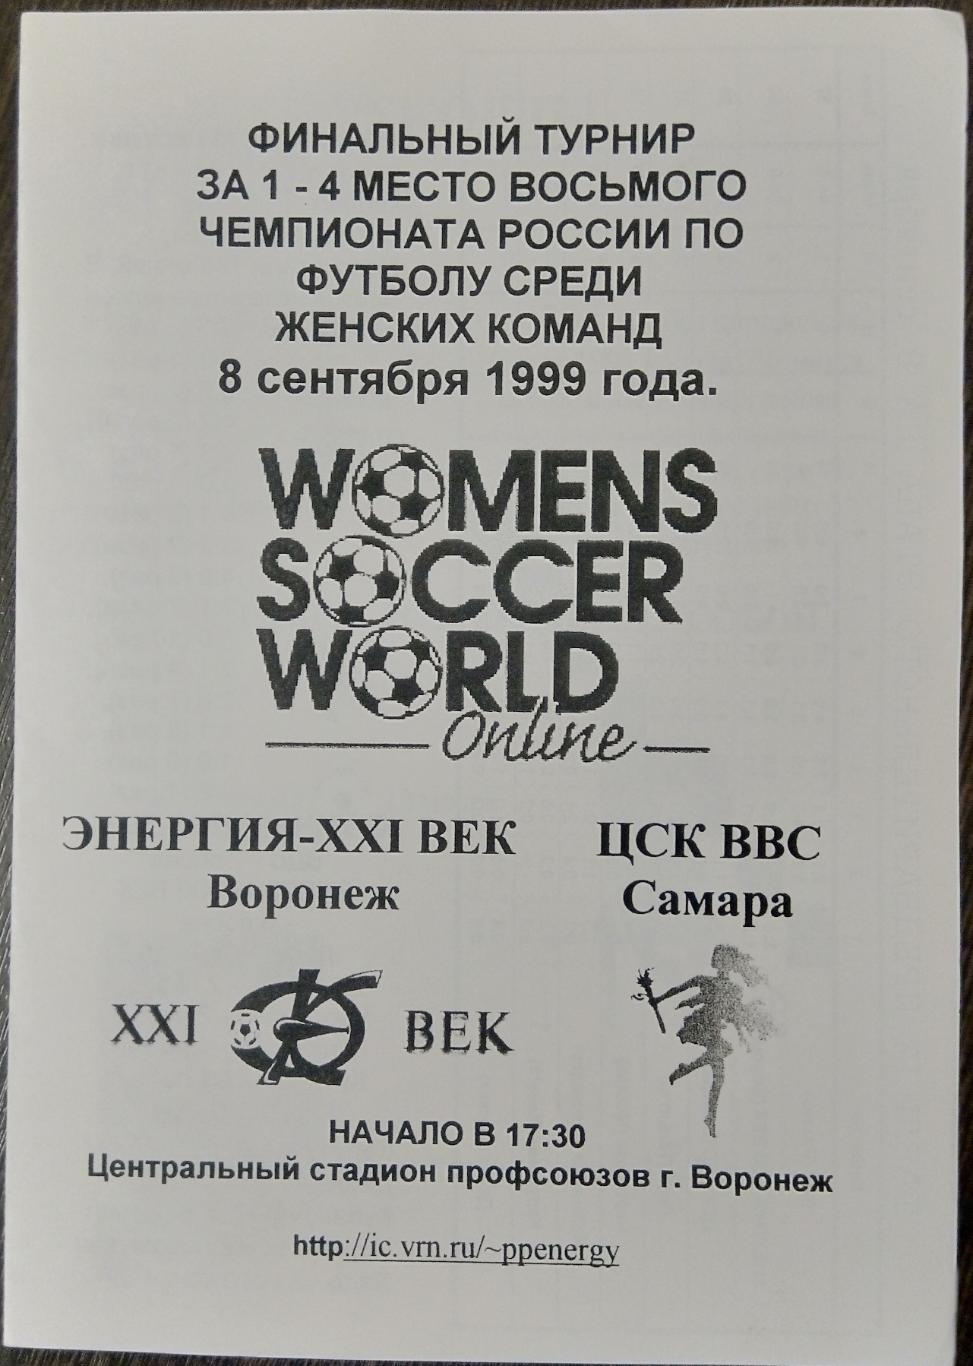 Женщины: Энергия Воронеж - ЦСК ВВС Самара - 1999